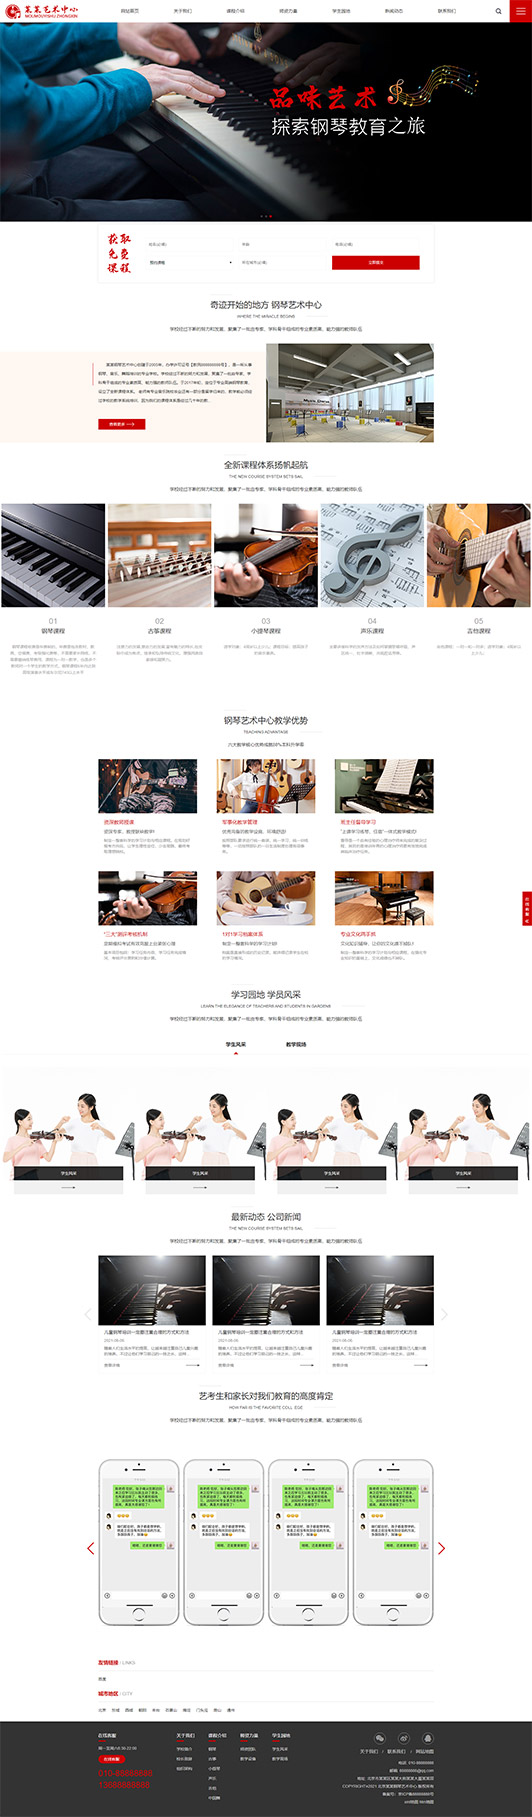 无锡钢琴艺术培训公司响应式企业网站